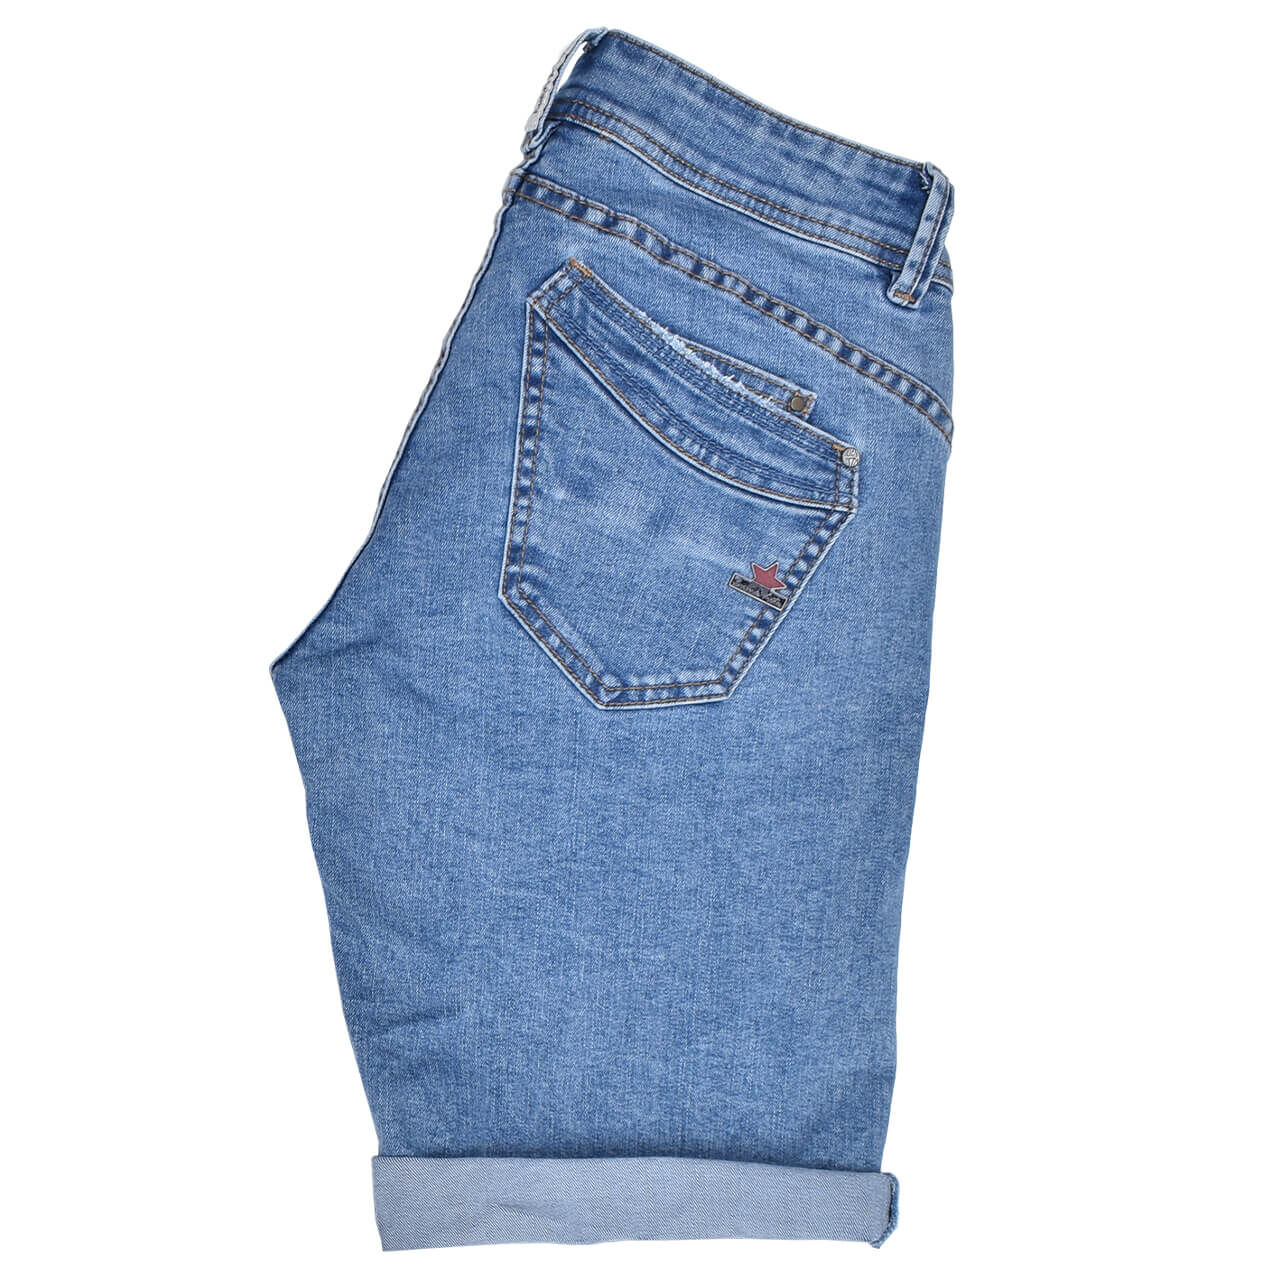 Buena Vista Jeans Malibu-Short Stretch Denim für Damen in Hellblau verwaschen, FarbNr.: 8678